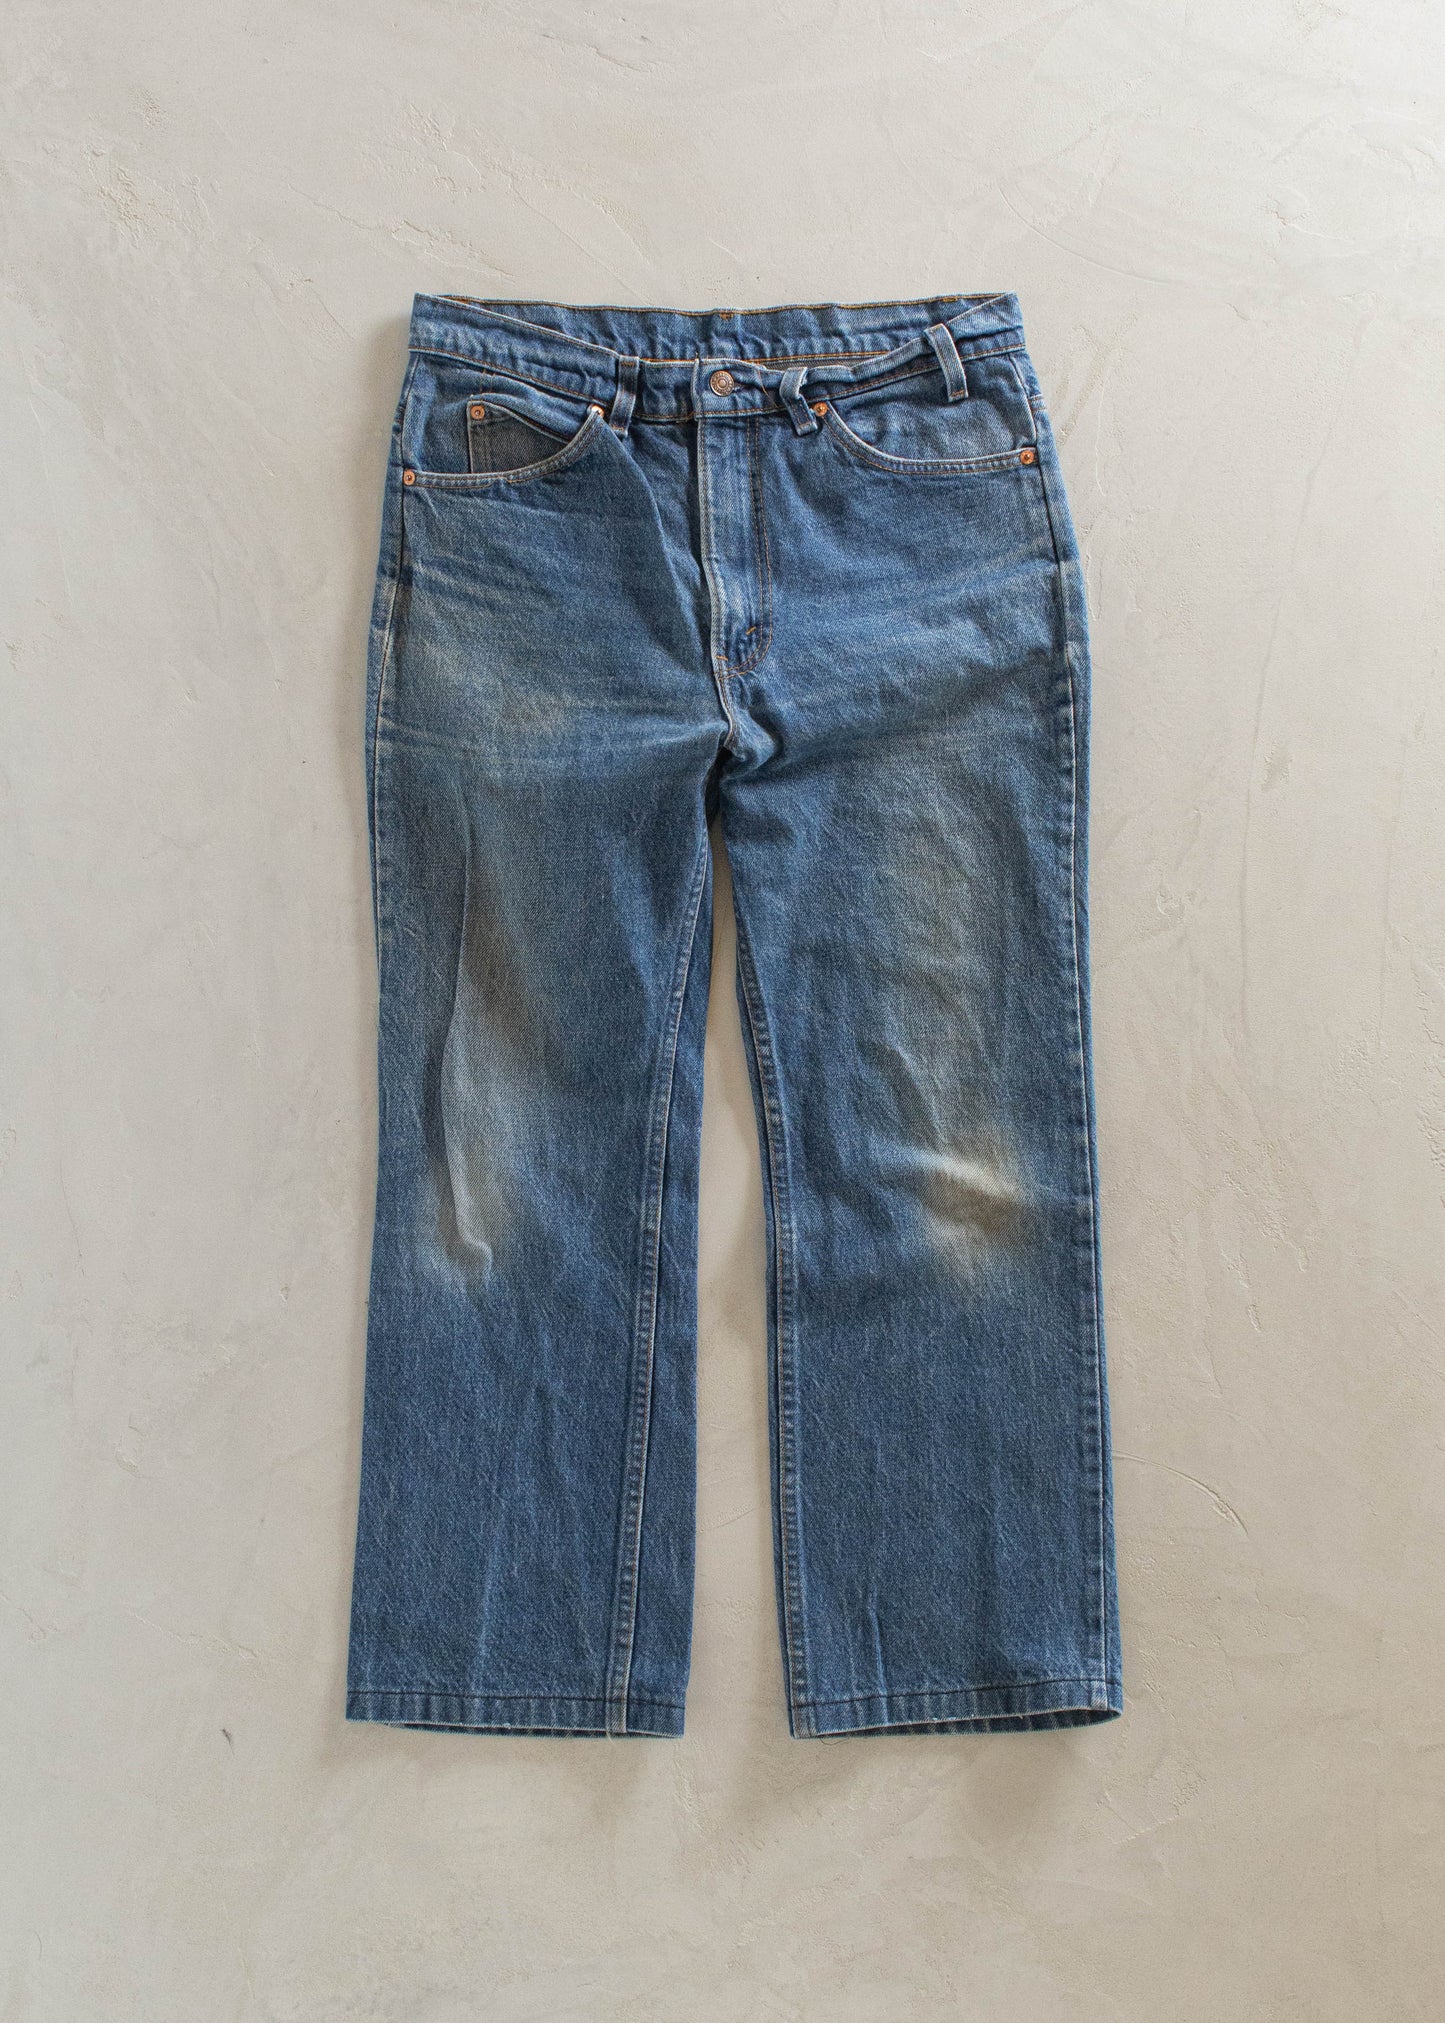 1980s Levi's Orange Tab Midwash Jeans Size Women's 30 Men's 32